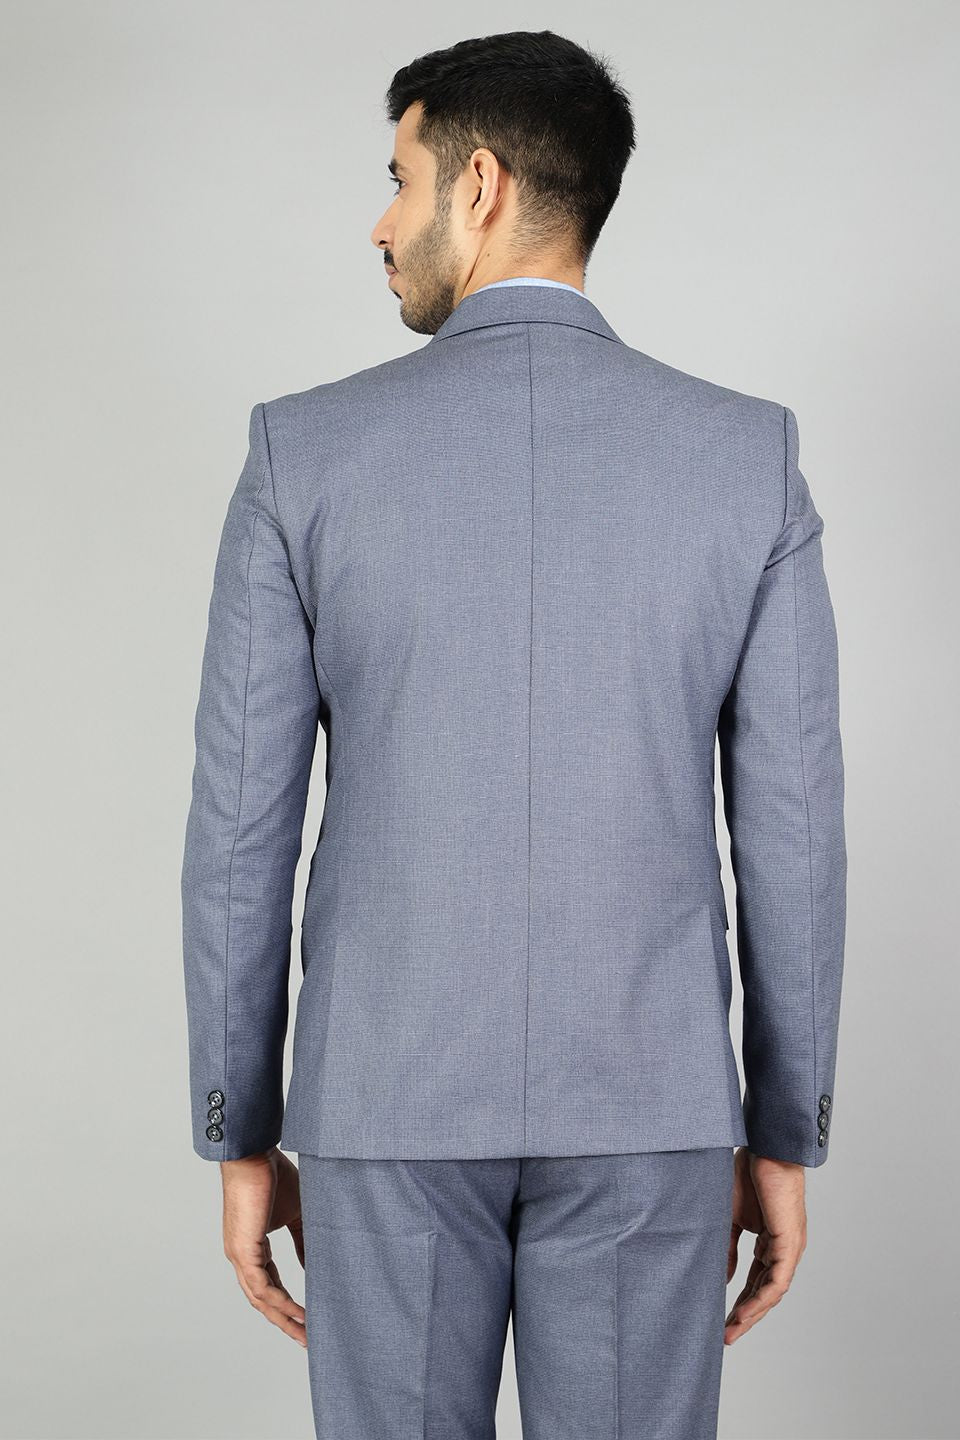 Polyester Cotton Plain Blue Suit